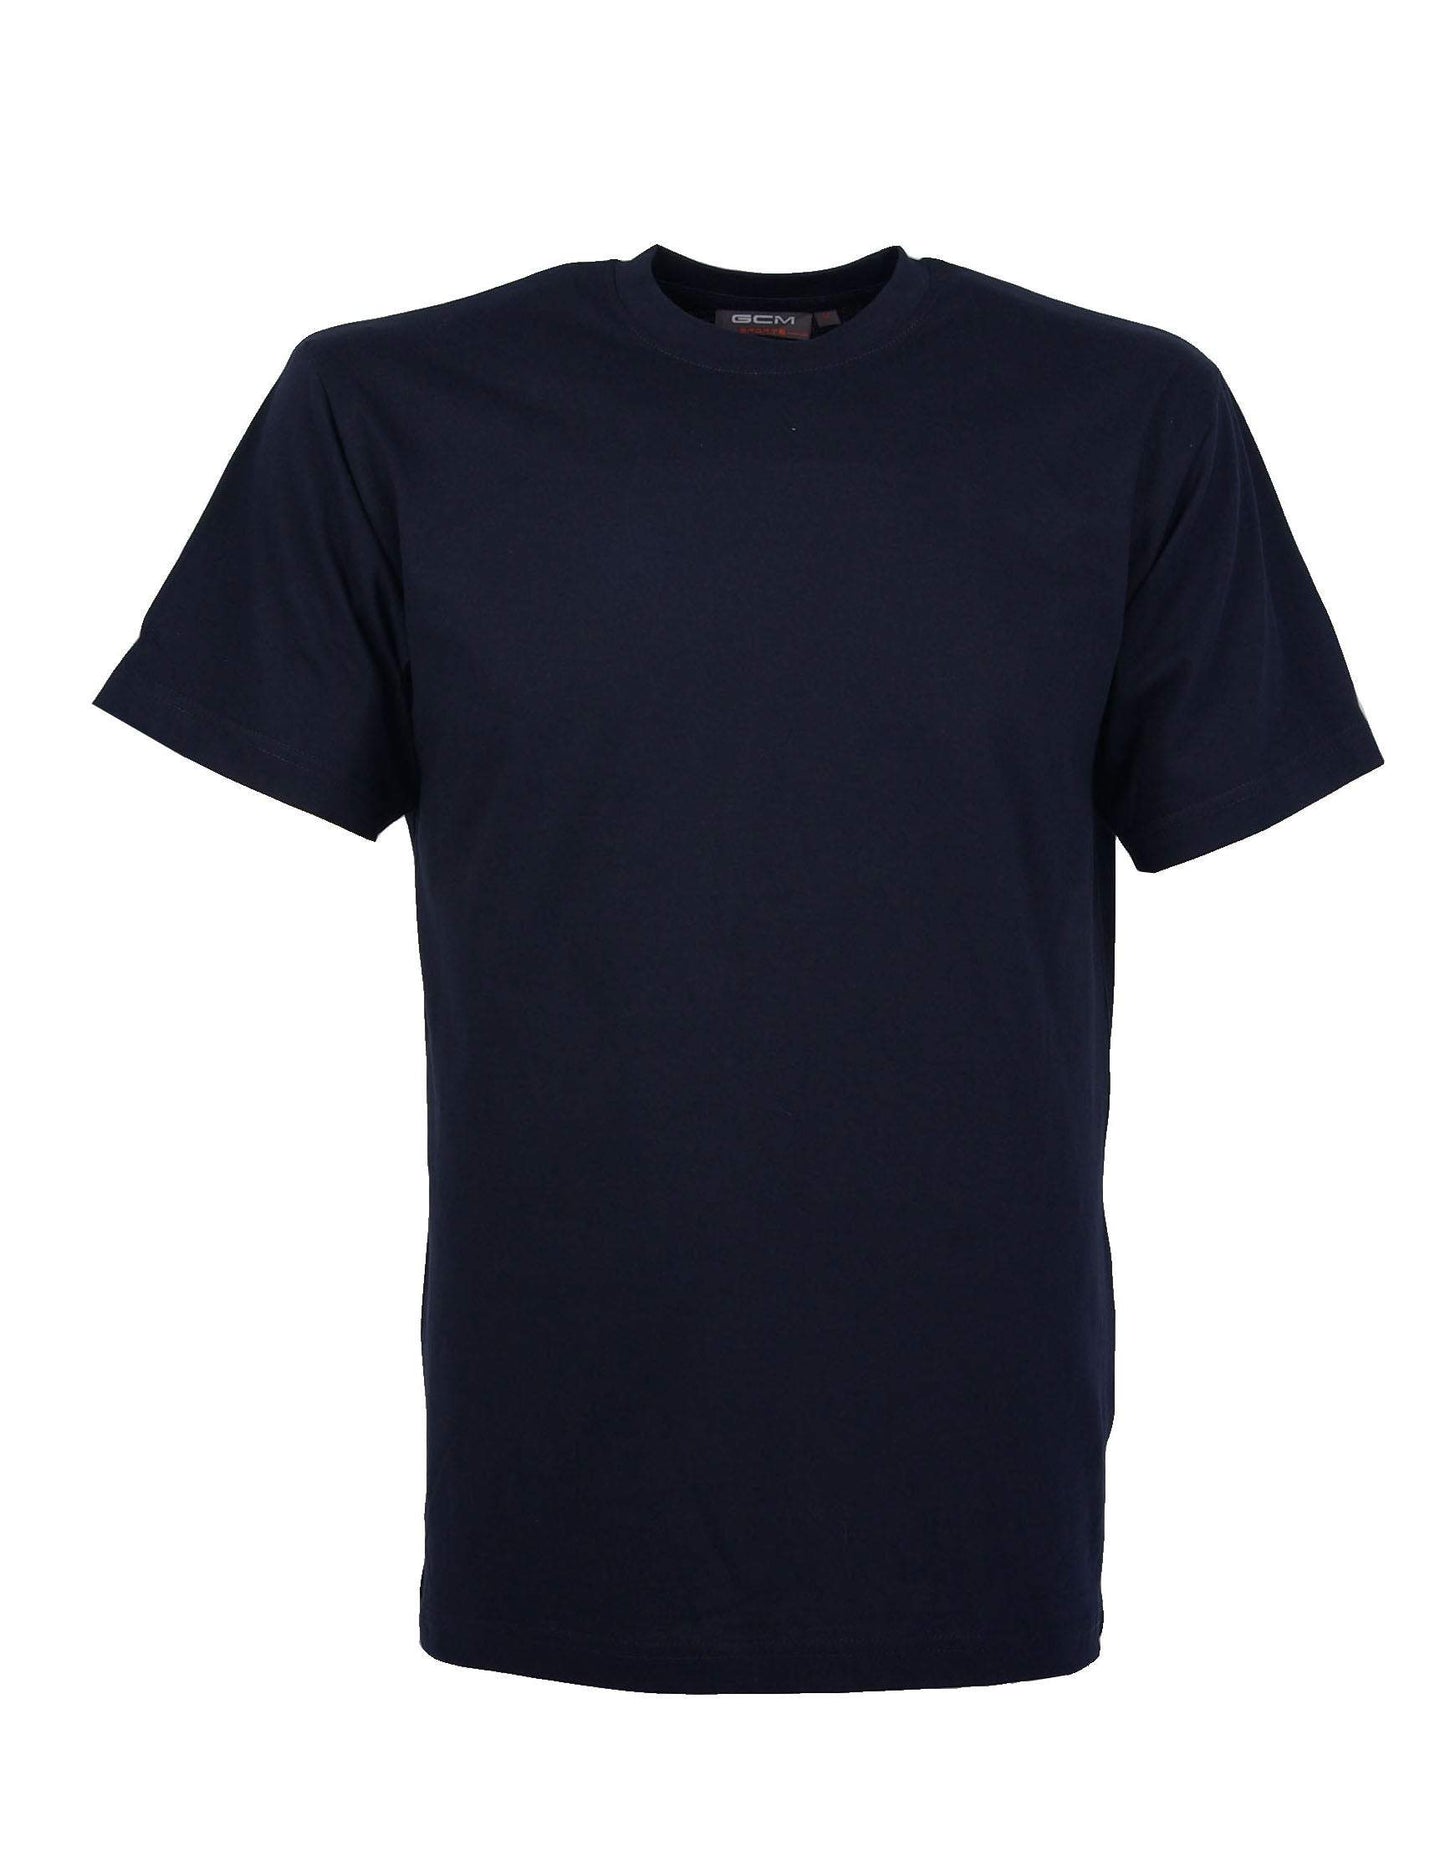 GCM original t-shirt ronde hals navy-Broeken Binkie-Grote maten,grote maten kleding,Grote Maten tops,grote tops,Ronde hals,Shirts